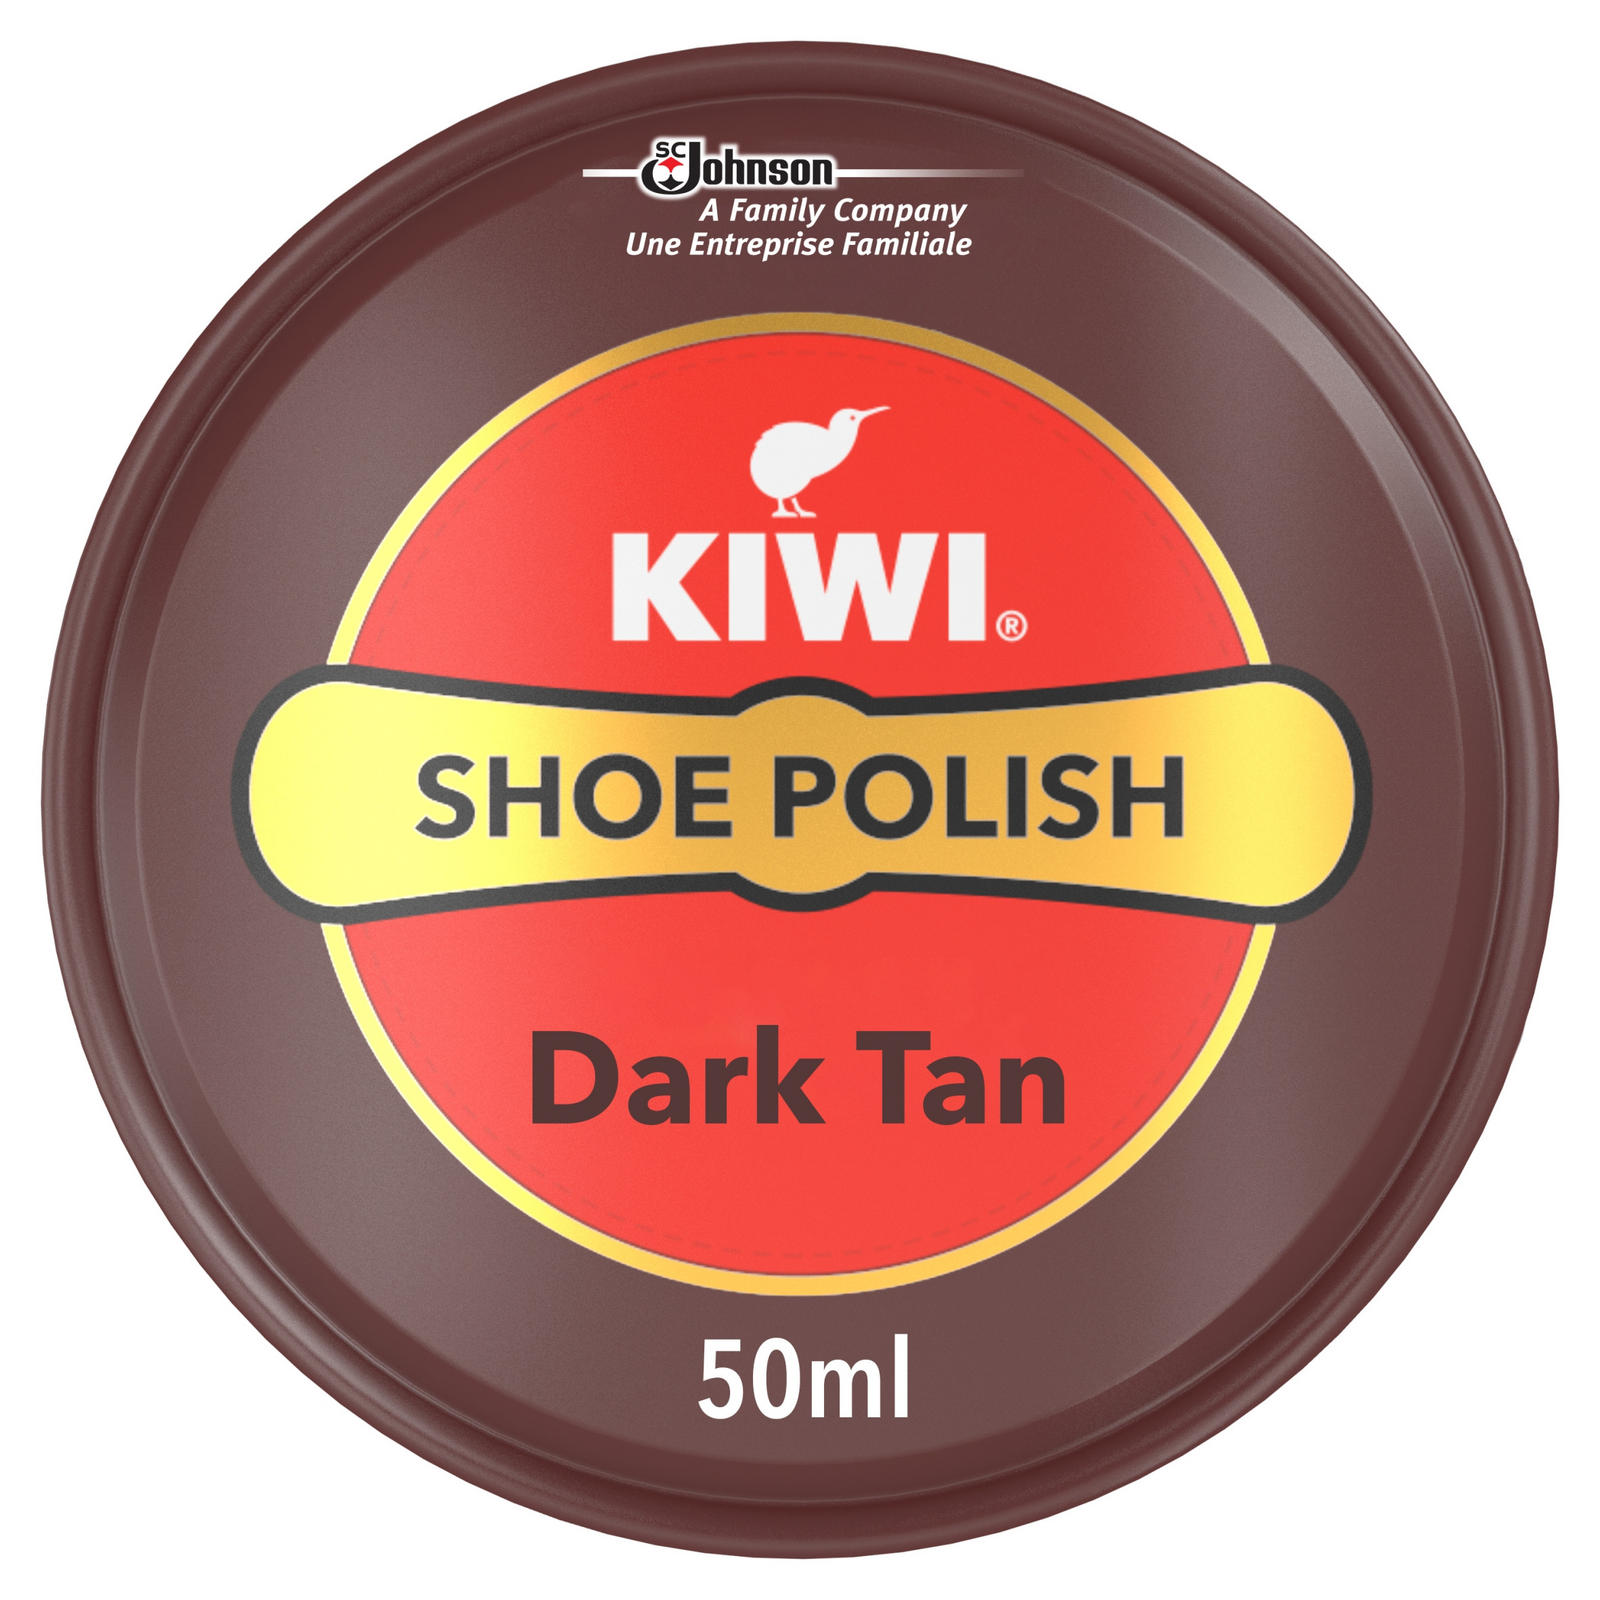 Tan boot polish